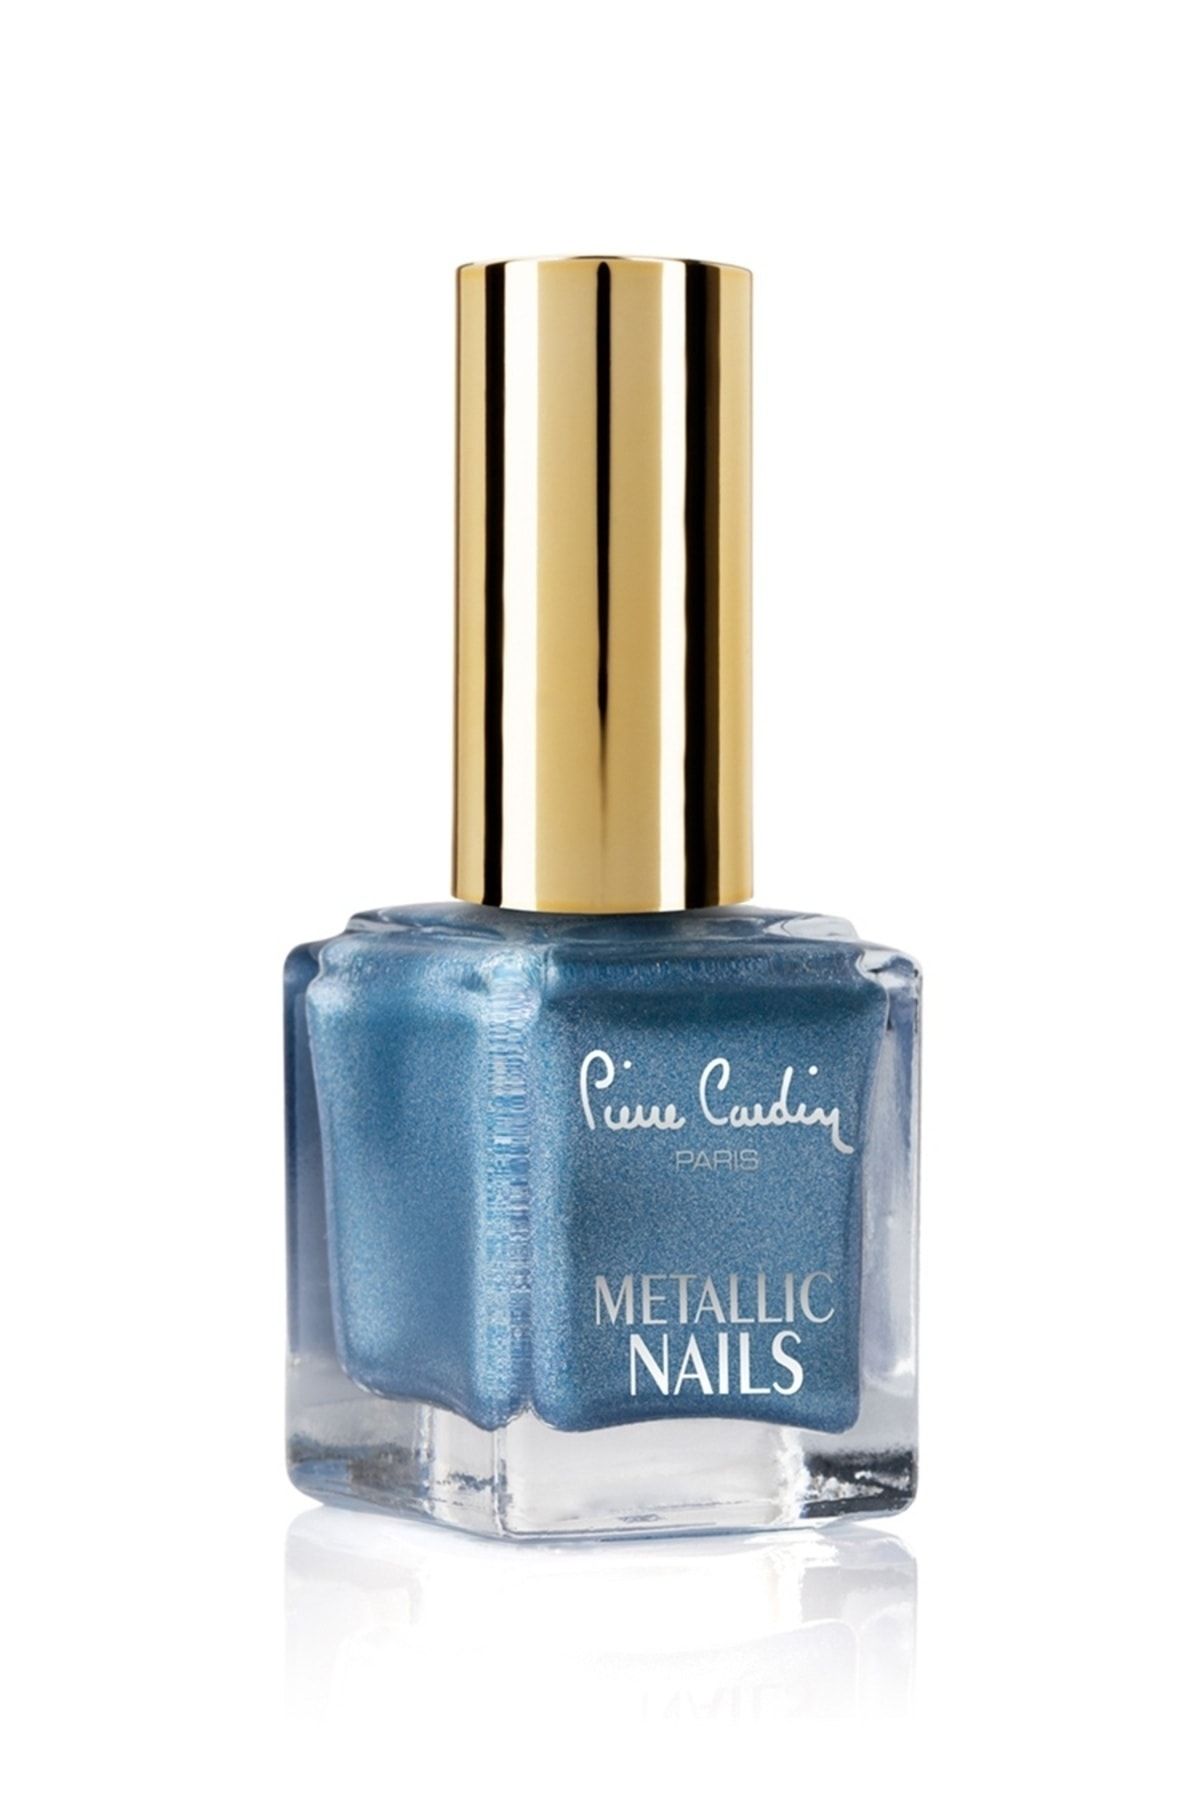 Pierre Cardin 14376 Metallic Nails Mavi Kadın Oje